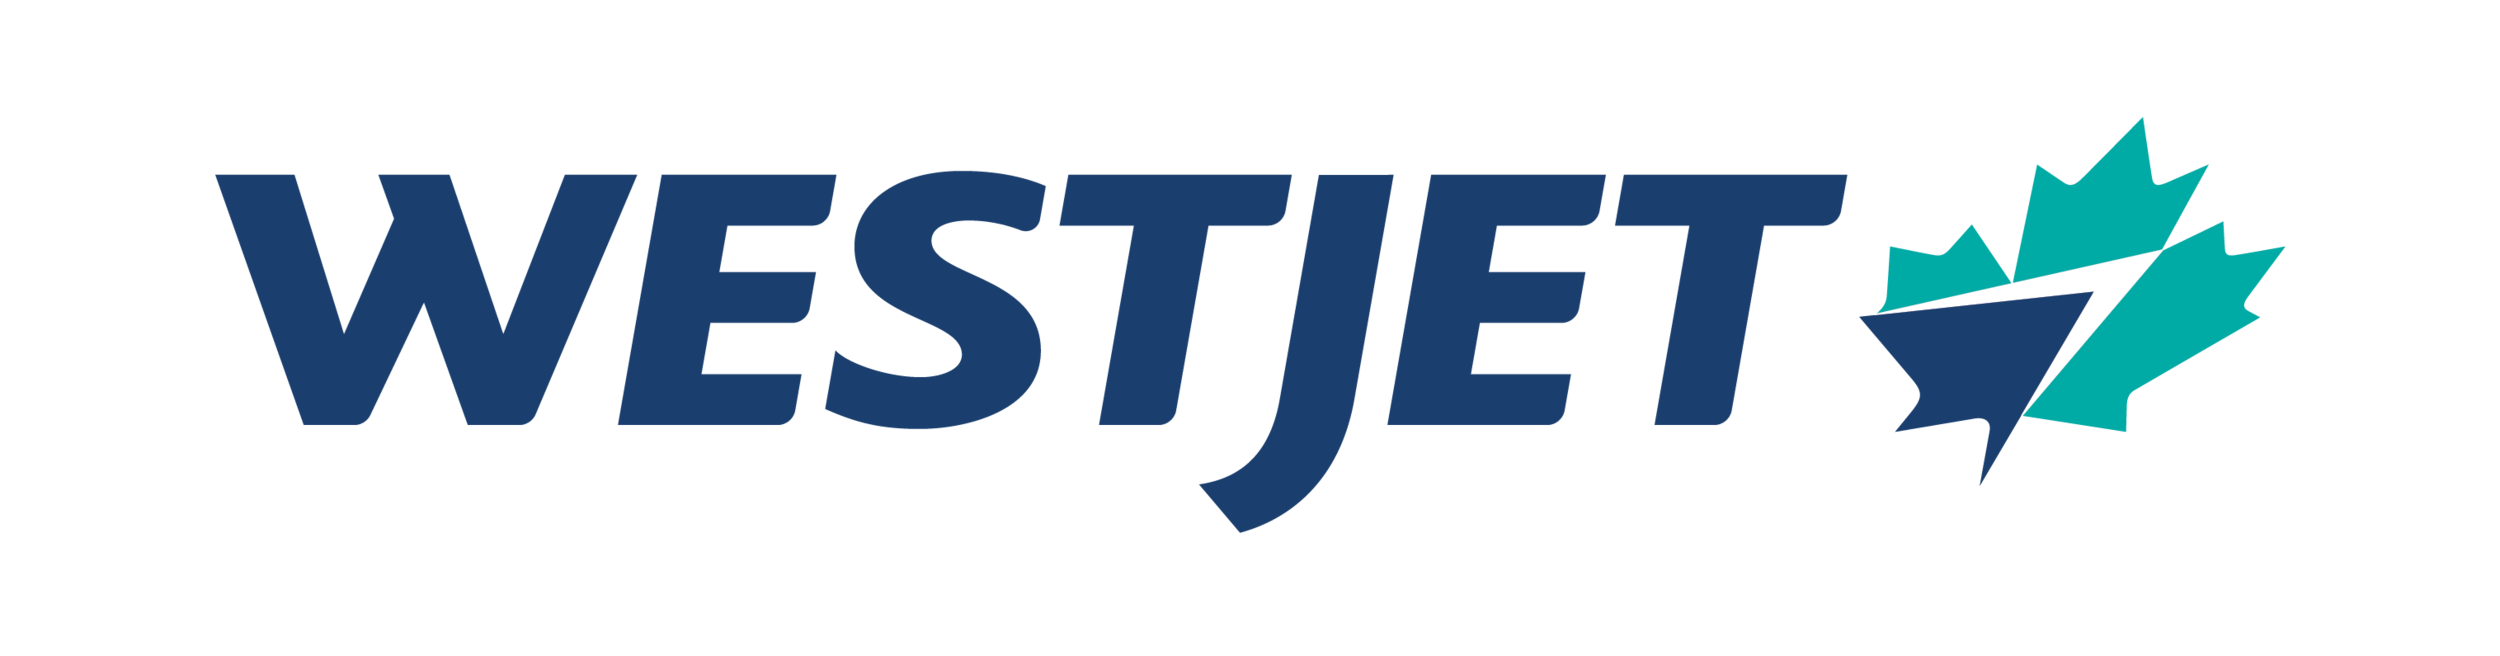 Westjet Logo.png